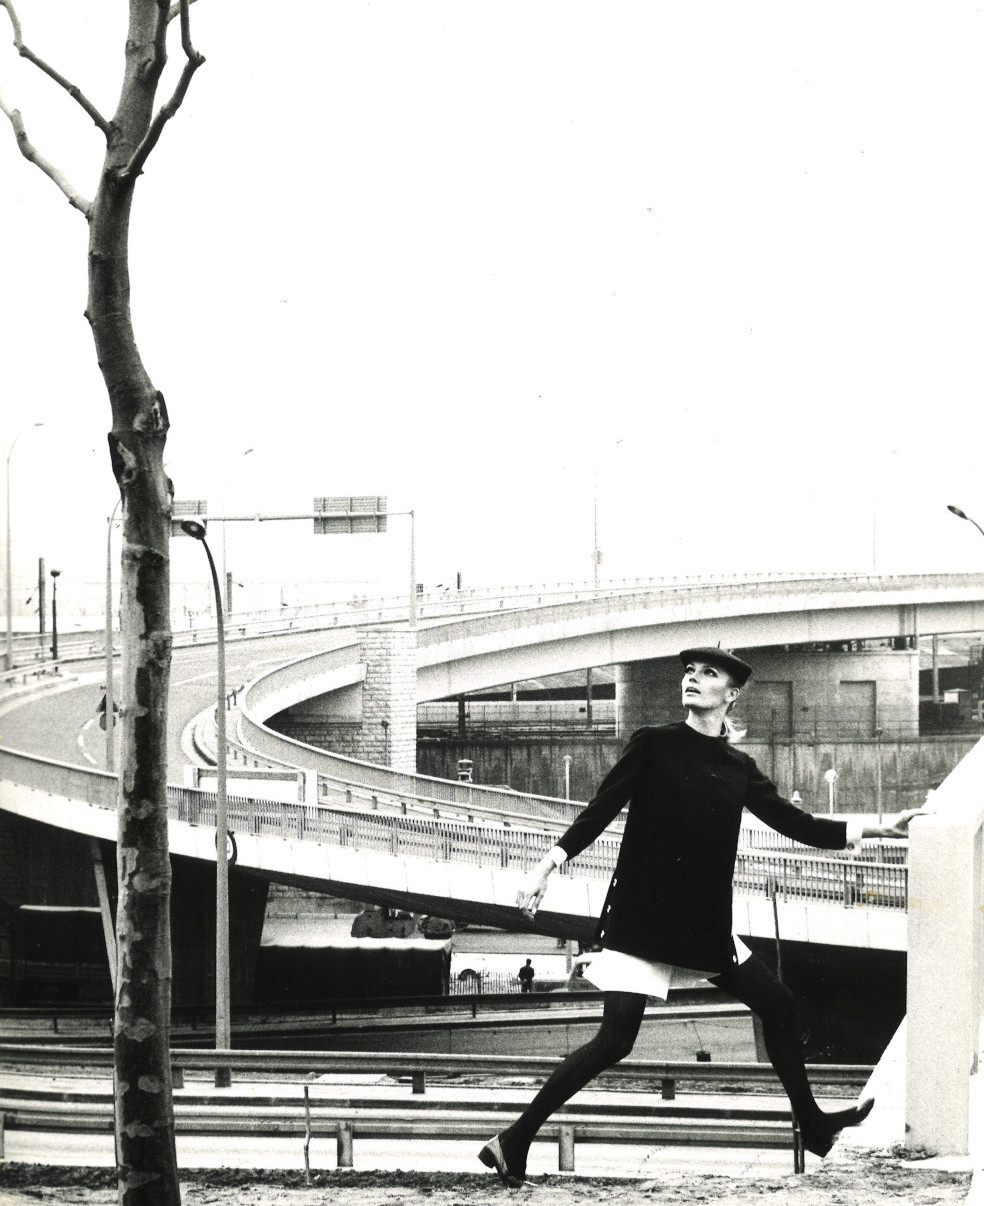 Untitled, 1967. Porte de la Chapelle interchange, Paris